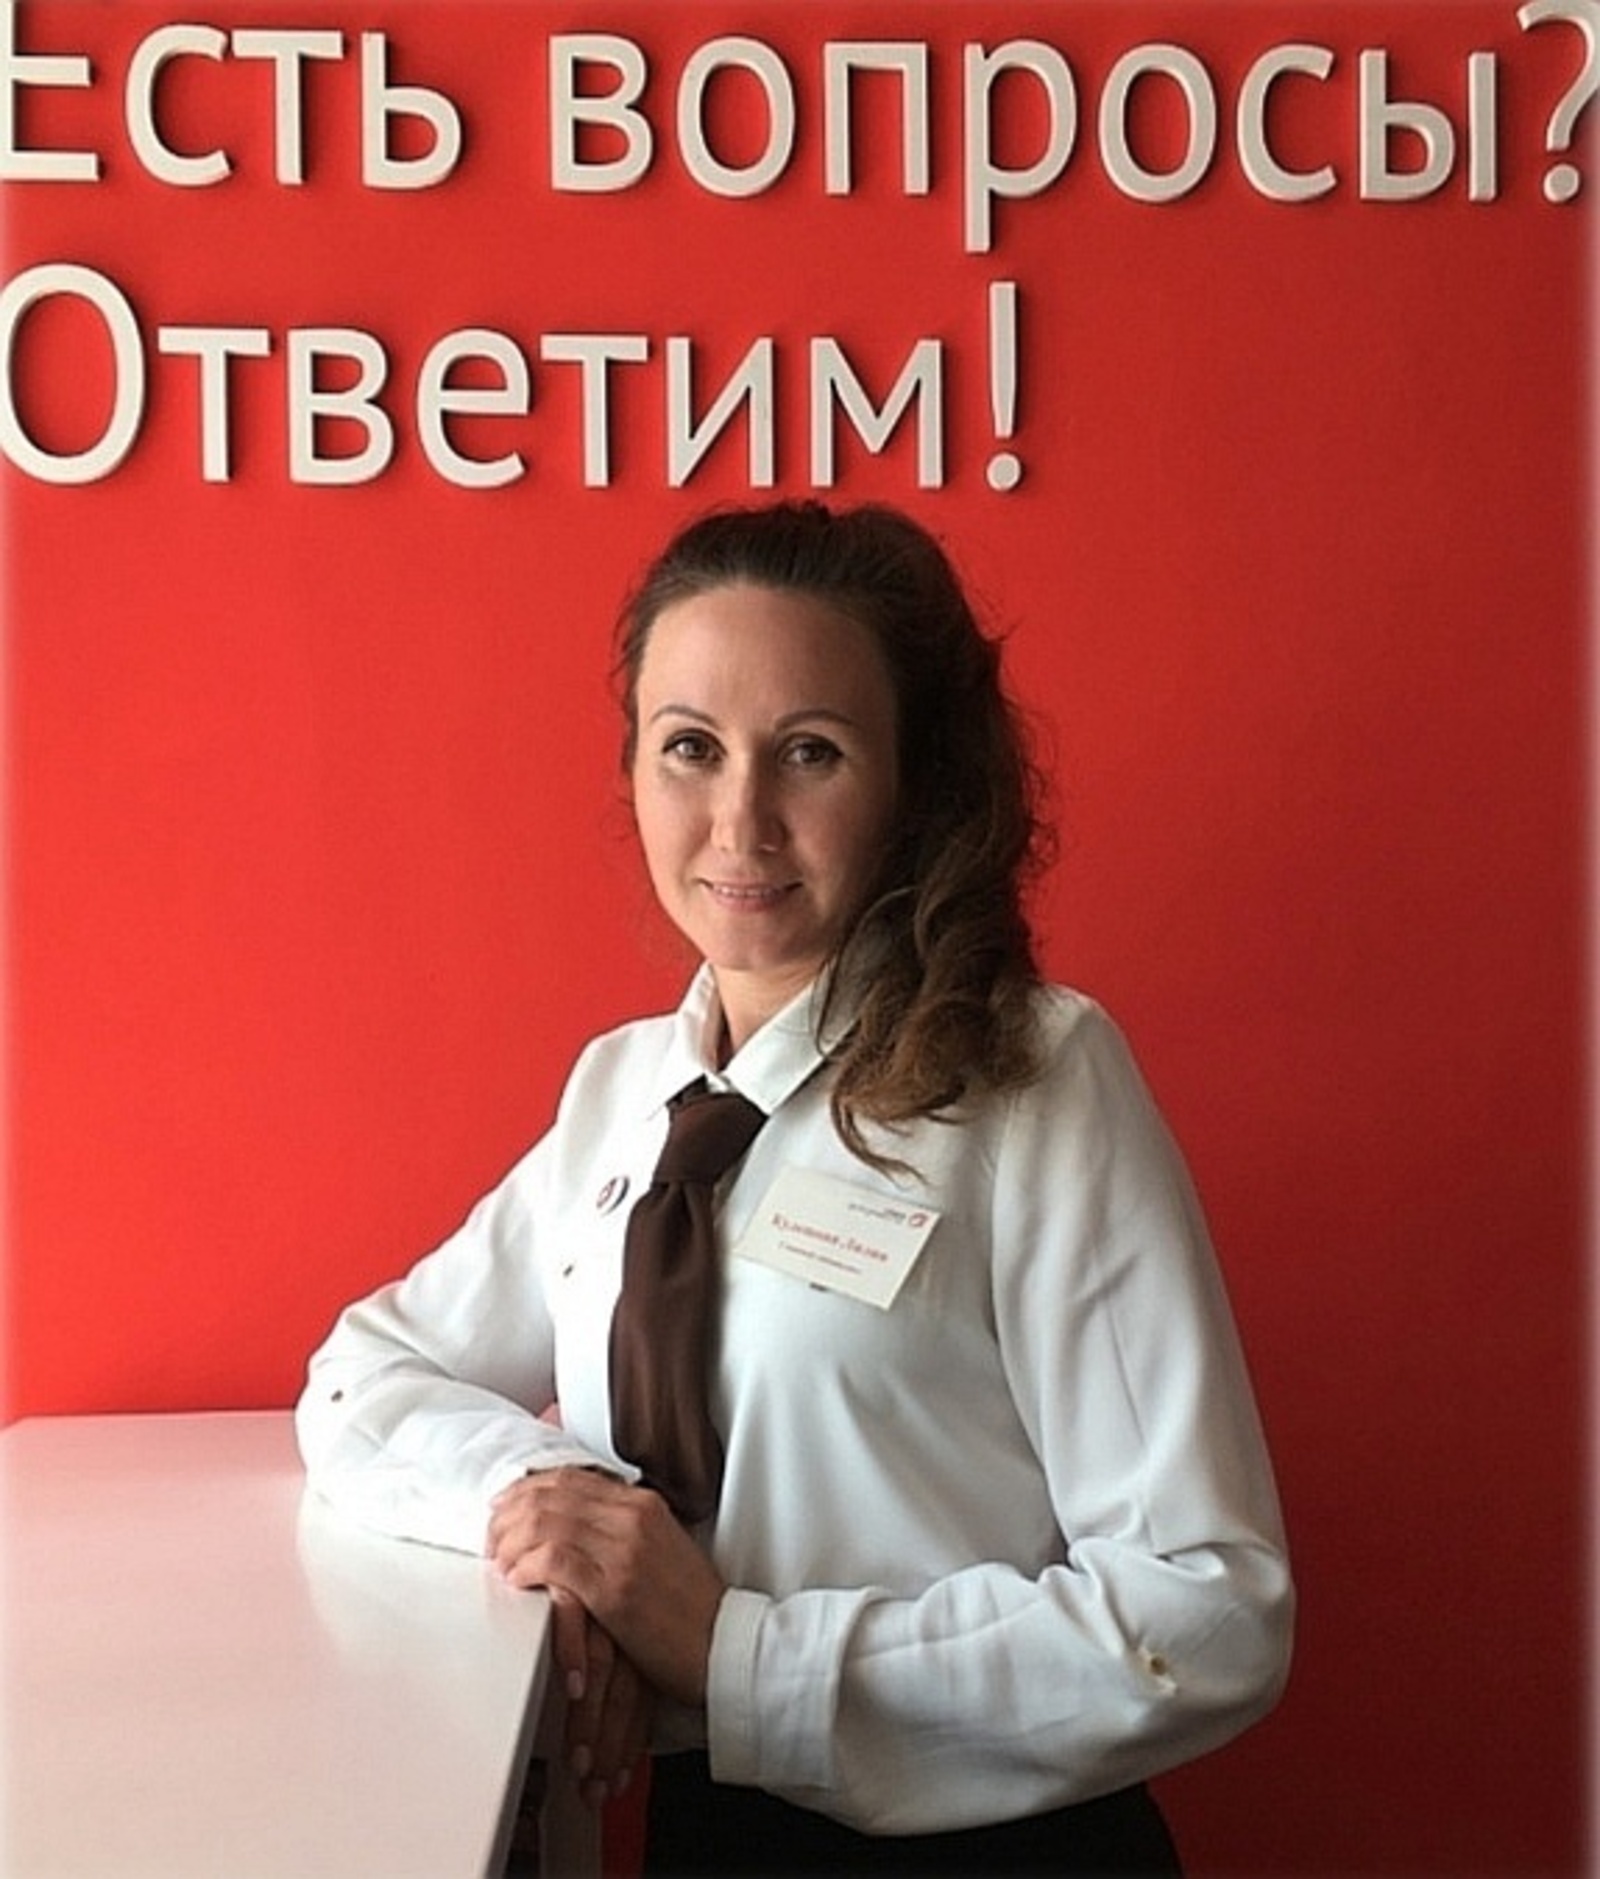 Работа в МФЦ для Лилии Кулешовой – это стремление помогать людям